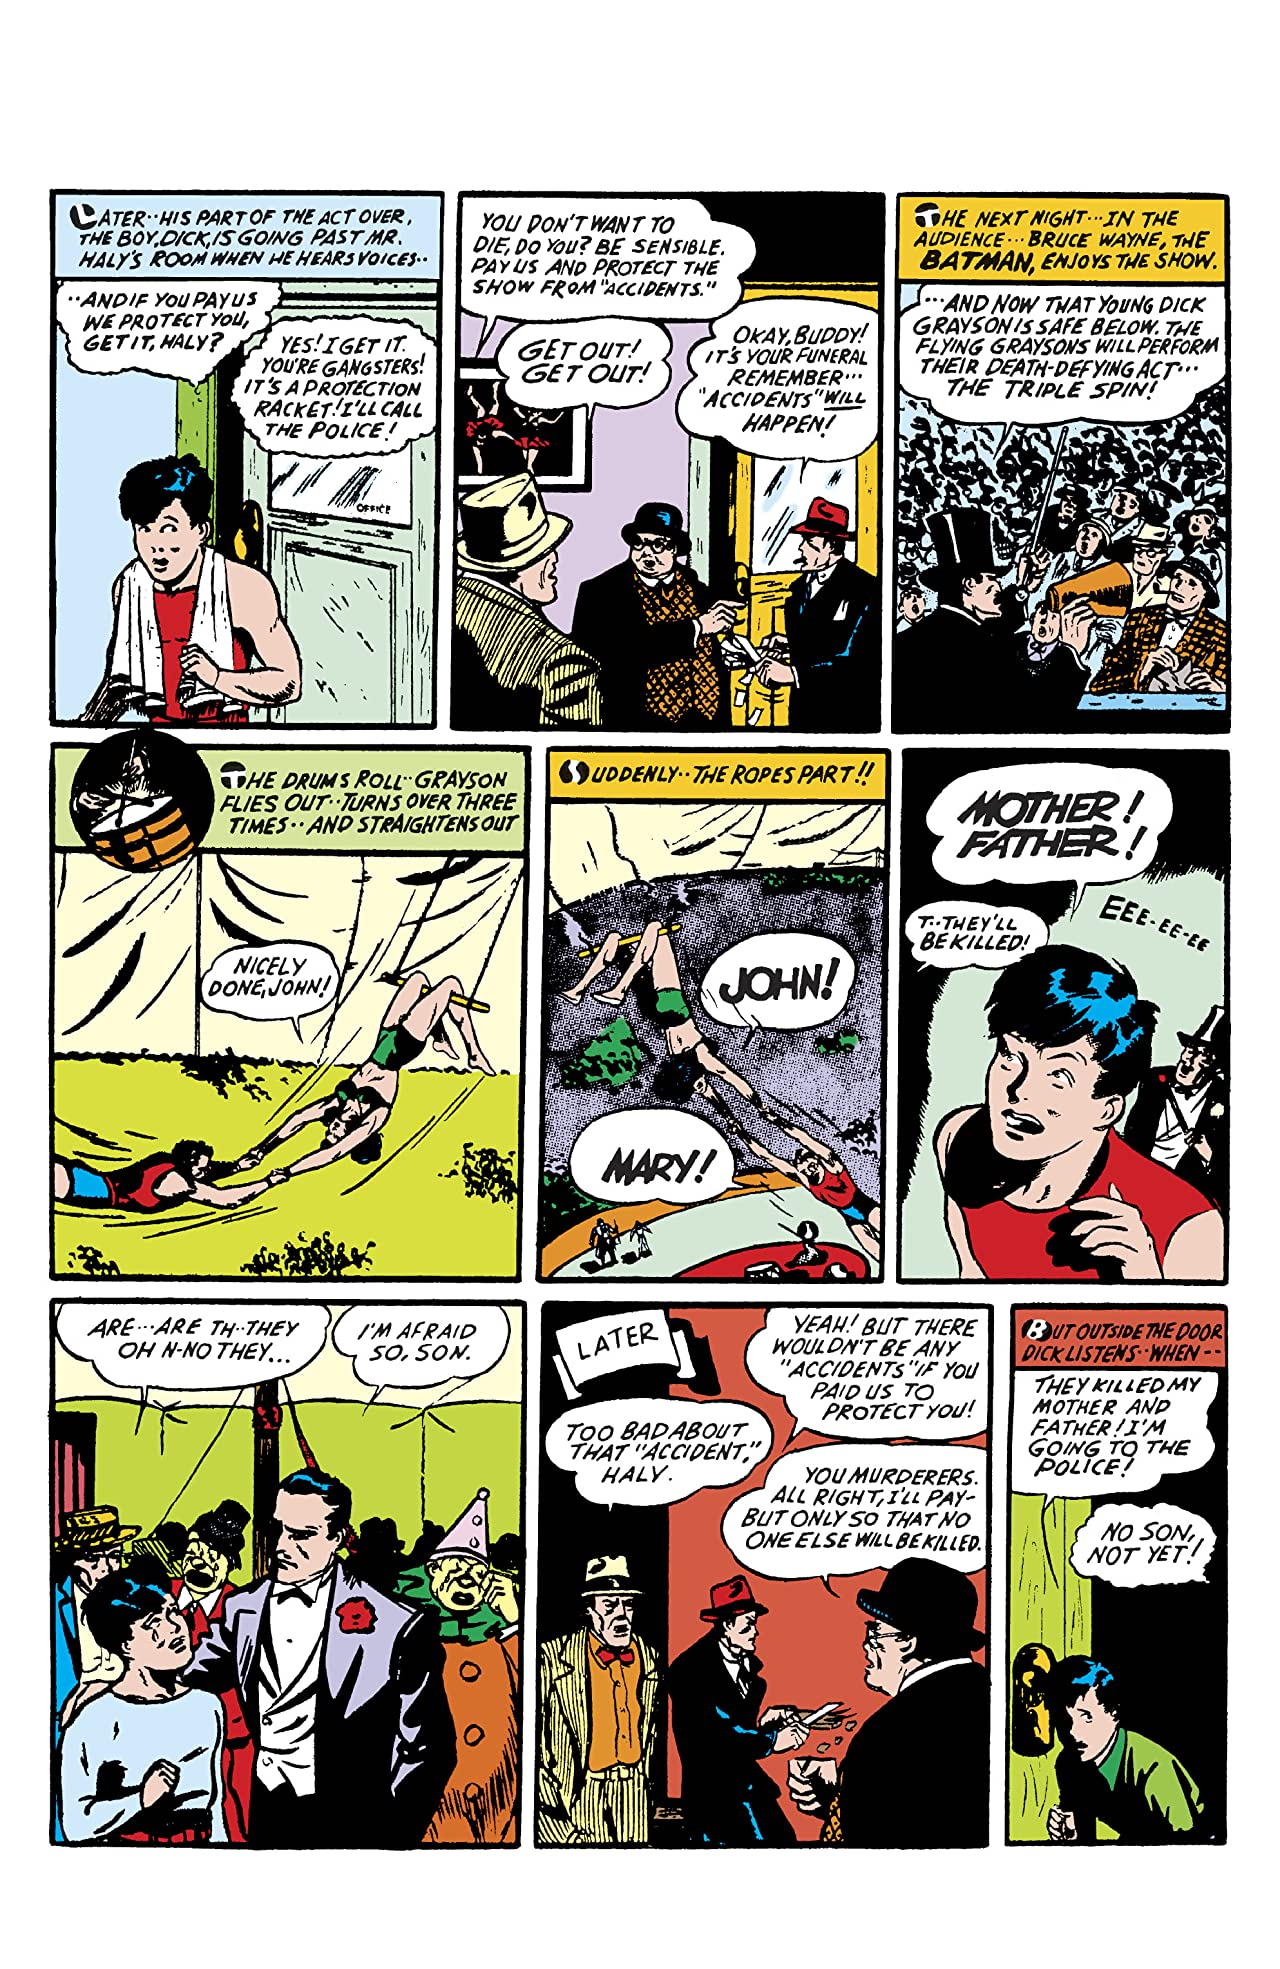 Detective Comics #38 Review